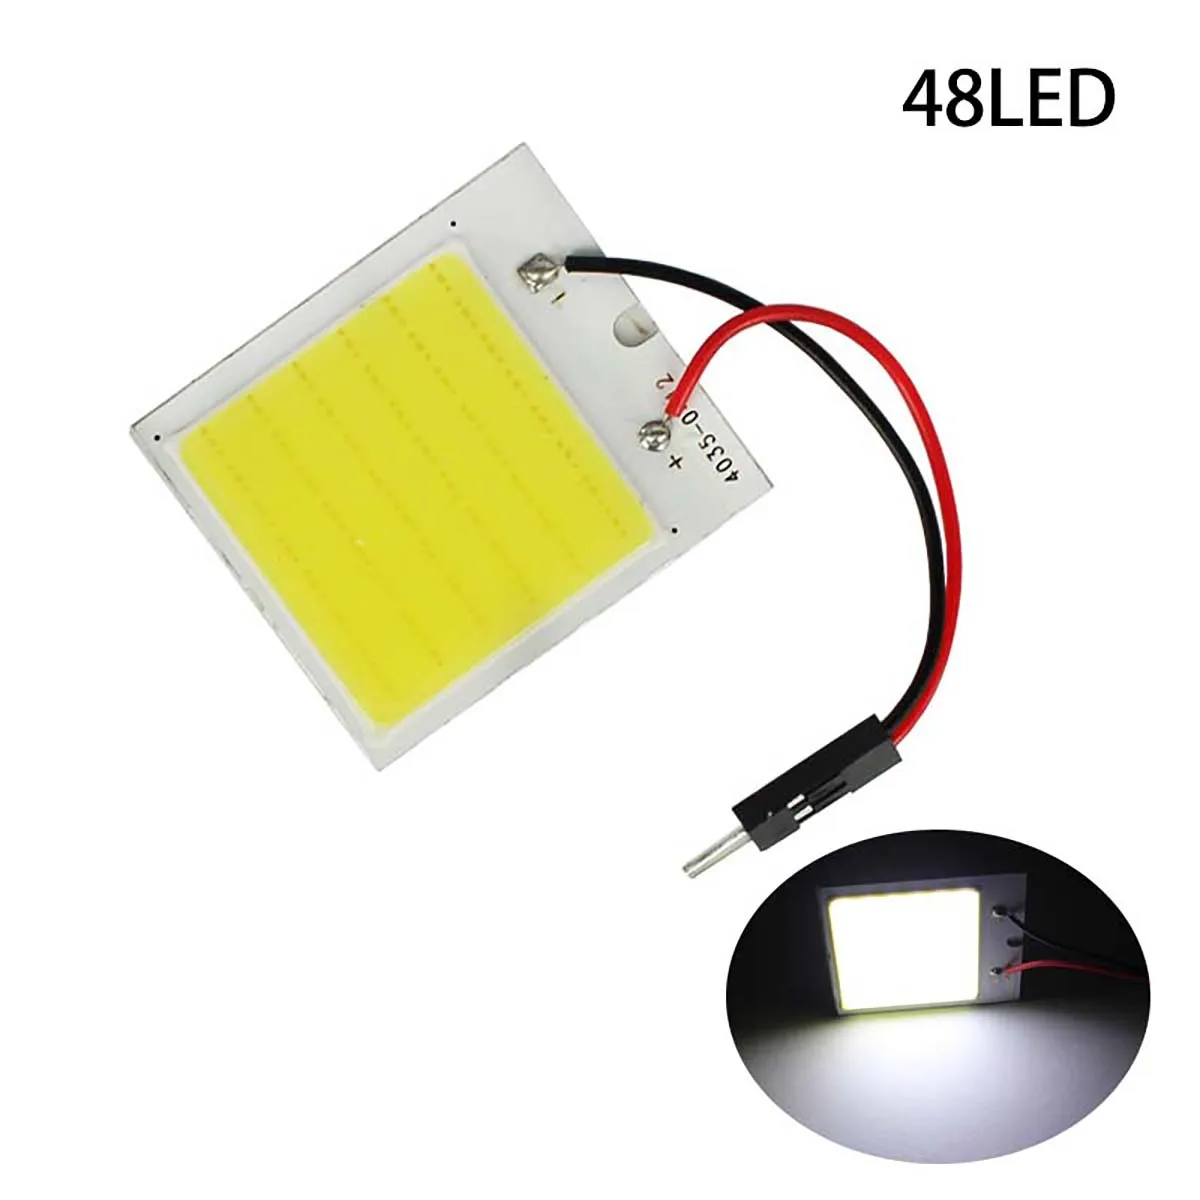 Высокое качество COB светодиодный панельный светильник супер белый автомобильный светильник для чтения карты Авто купольная интерьерная лампа с адаптером T10 Festoon Base 12 В DC - Испускаемый цвет: 48led